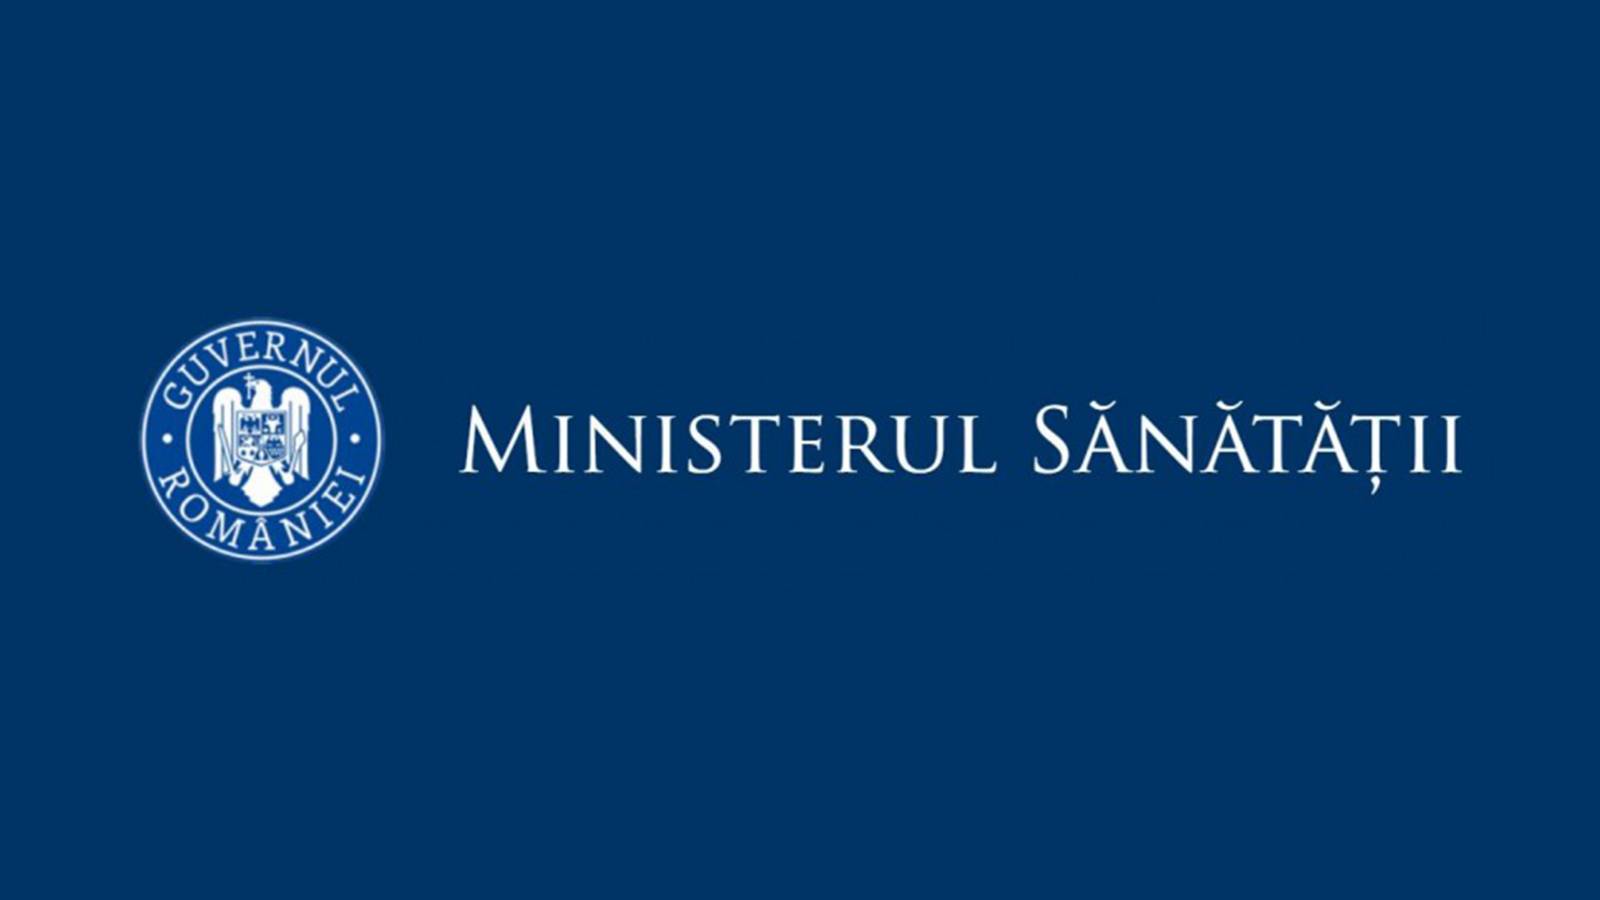 Ministerul Sanatatii judete covid-19 8 august